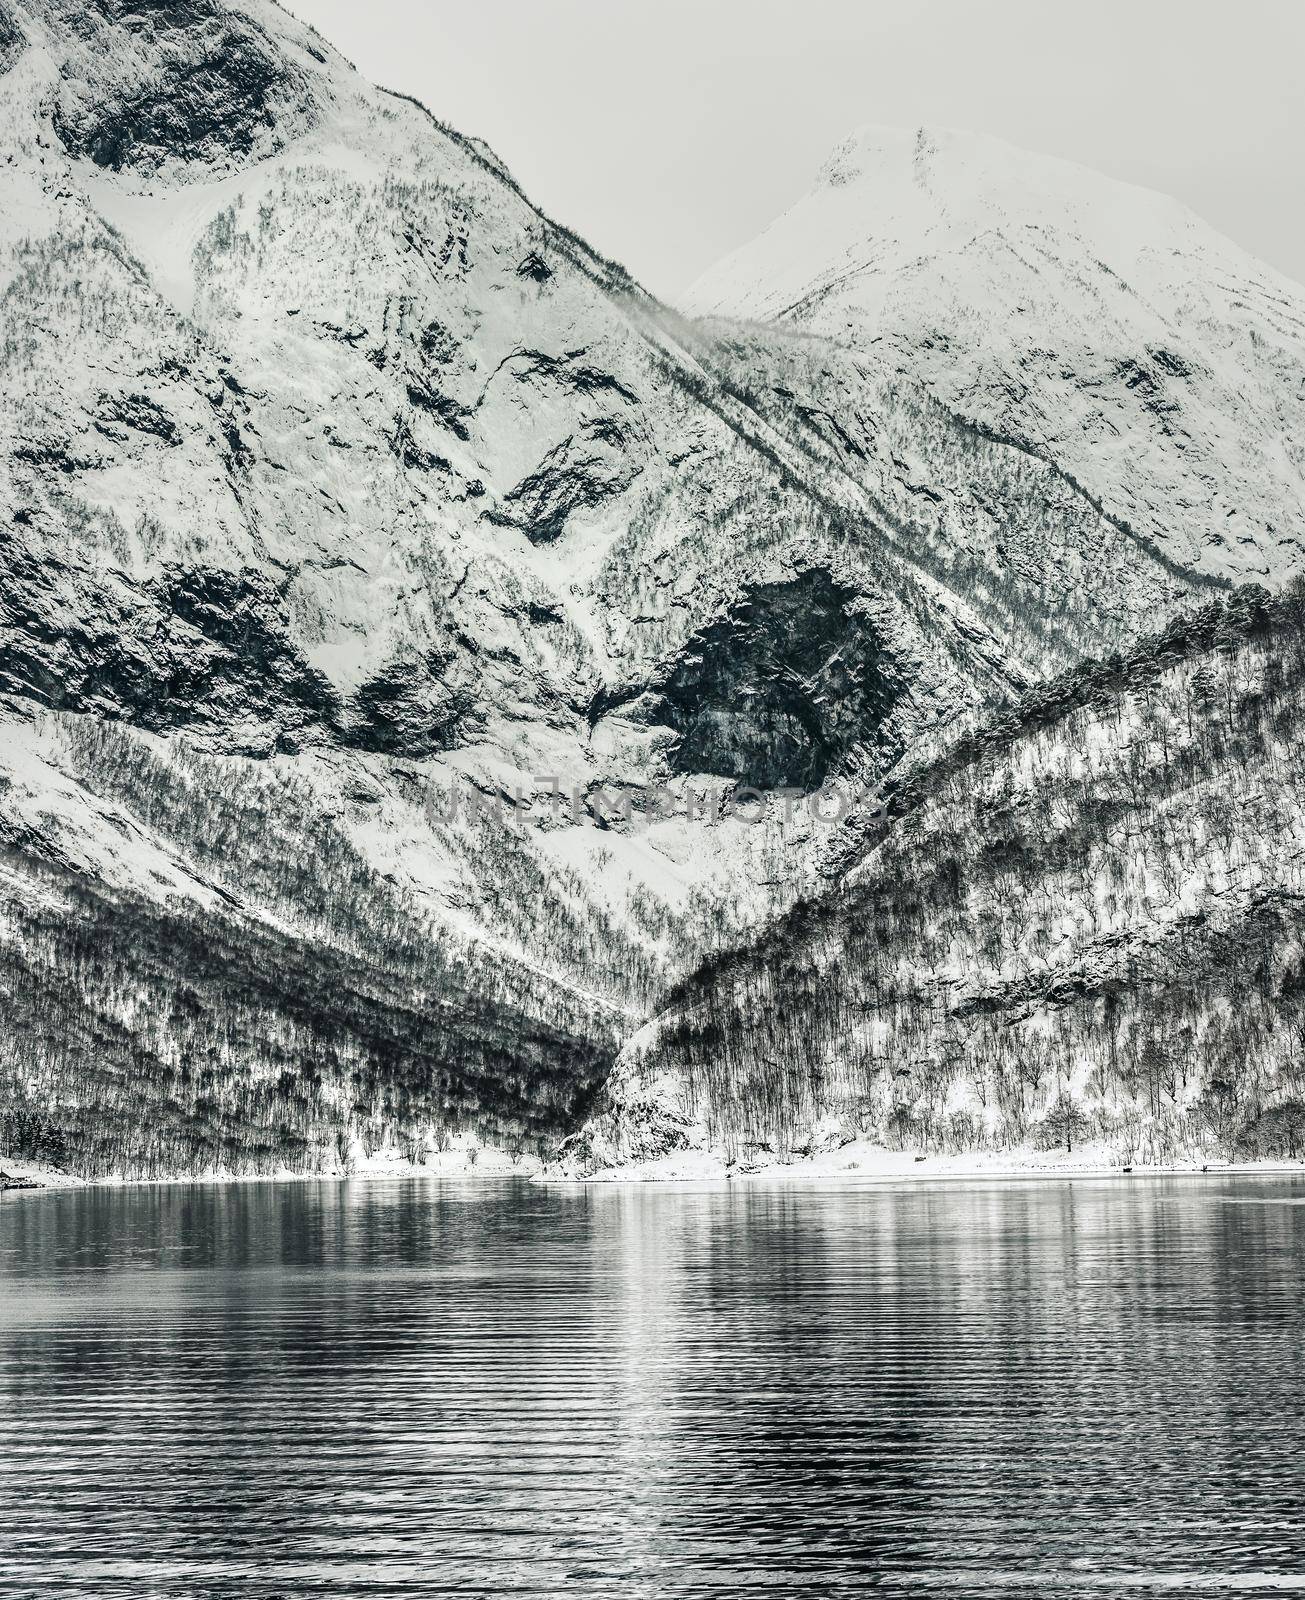 Norwegian Fjords by GekaSkr